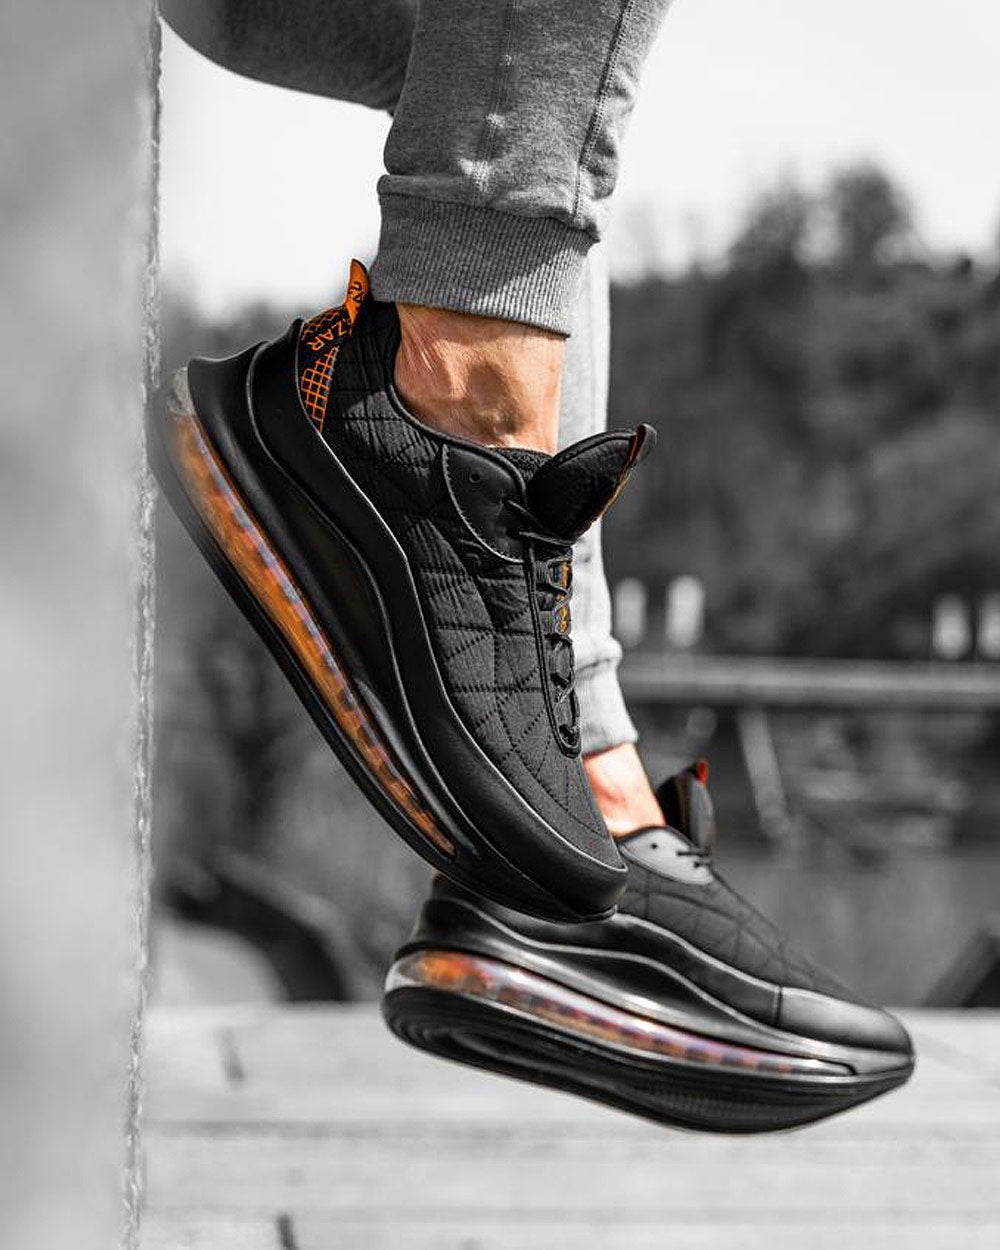 Chaussures Sneakers noir avec semelles intégrée effet bulles d'air orange pour homme